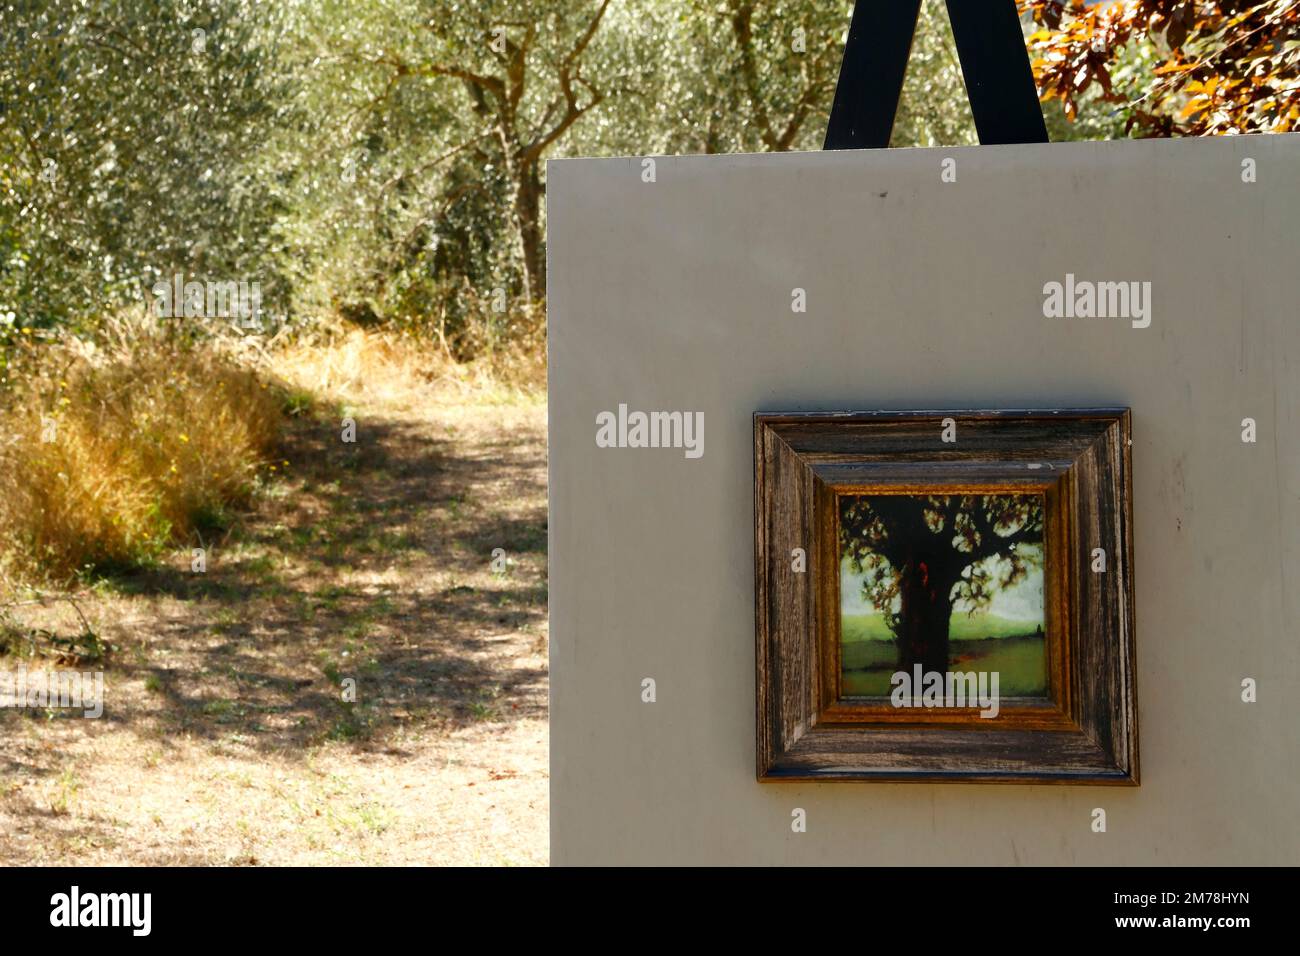 Dipinto ad olio di un albero dell'artista italiano Andrea Cresti, parte di una mostra d'arte in un oliveto nel medioevo Monticchiello, Val d'Orcia, Toscana, IT Foto Stock